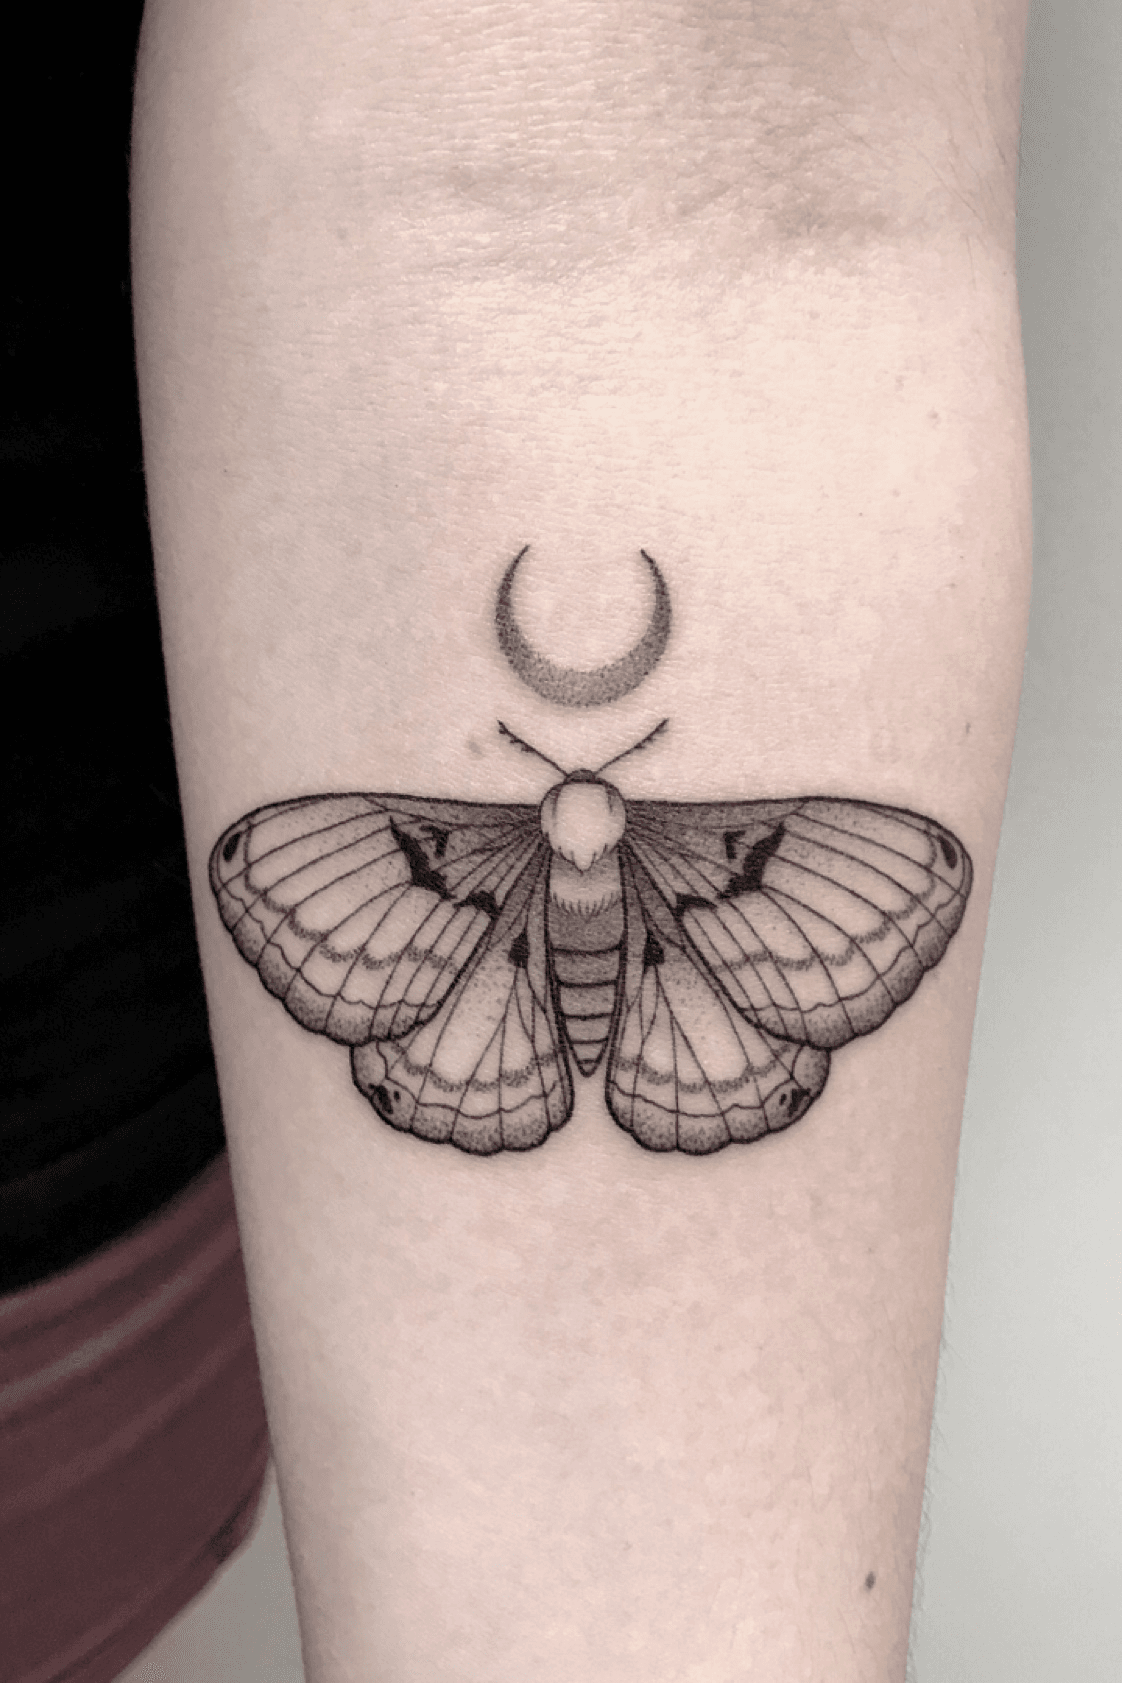 Moth tattoo design for grab  click the link  mothtattoo blacktattoo  dotwork  Moth tattoo Leopard print tattoos Moth tattoo design